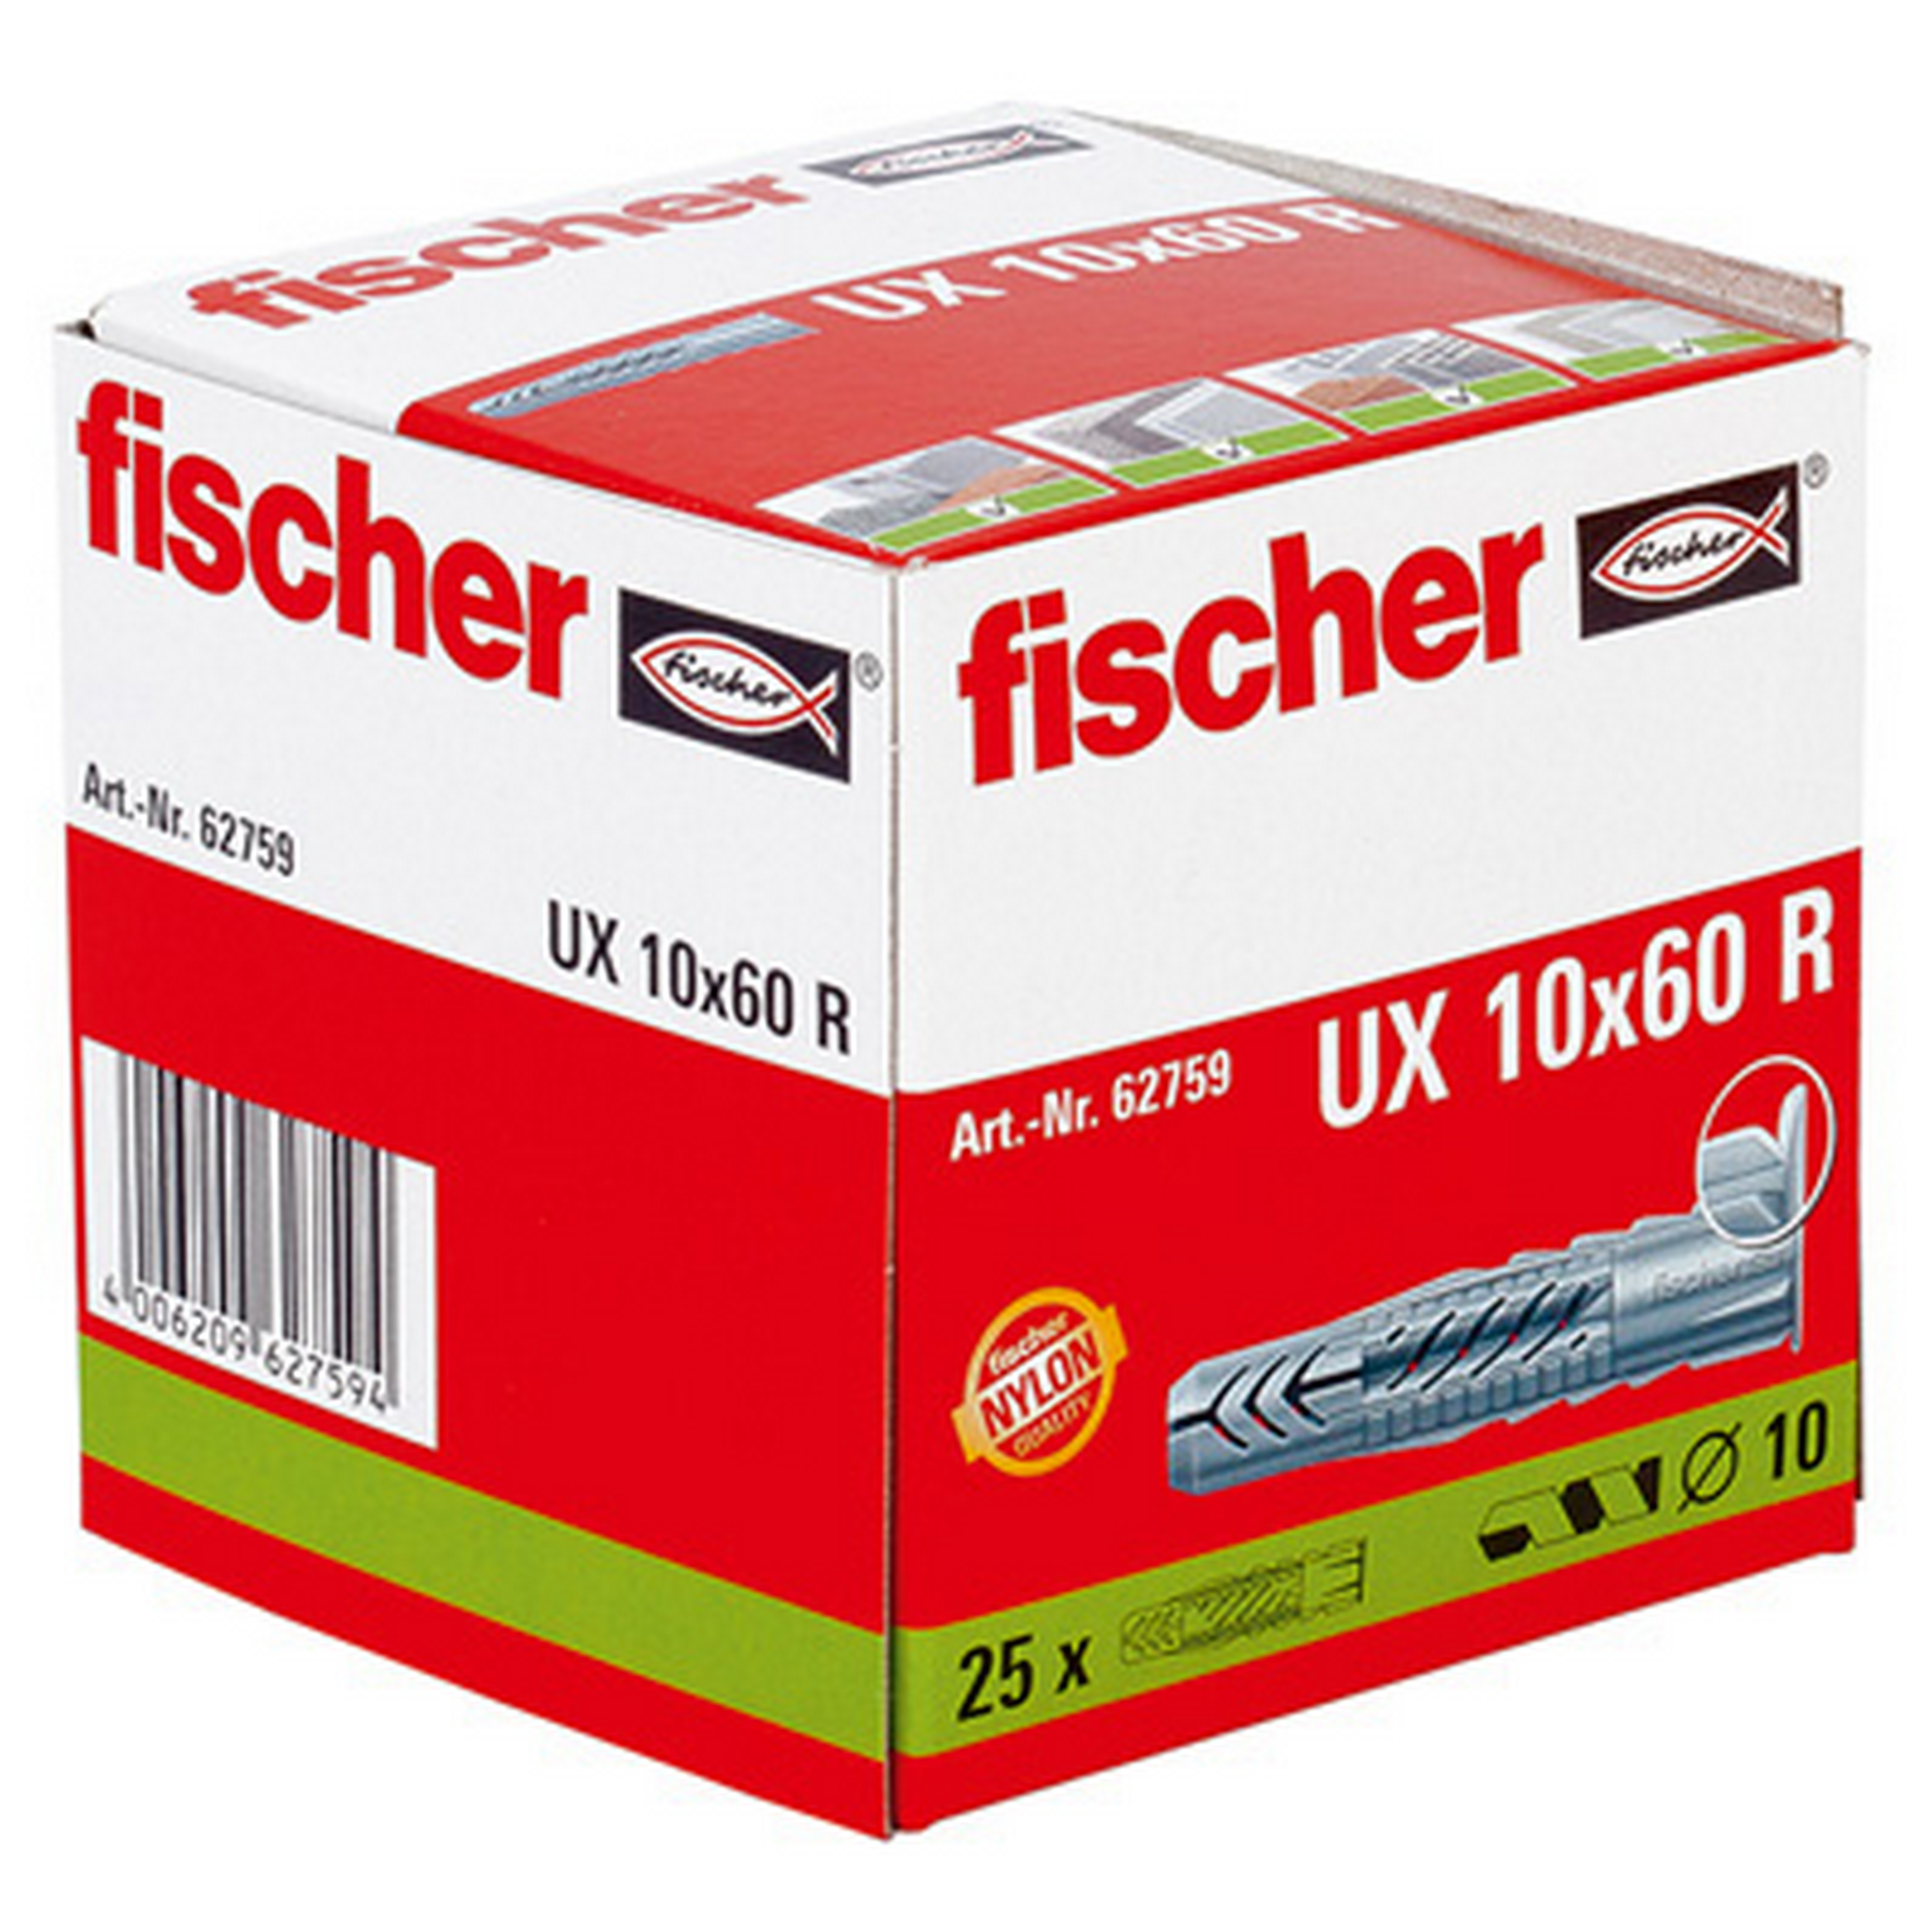 fischer Universaldübel UX 10 x 60 R mit Rand 25 Stück + product picture